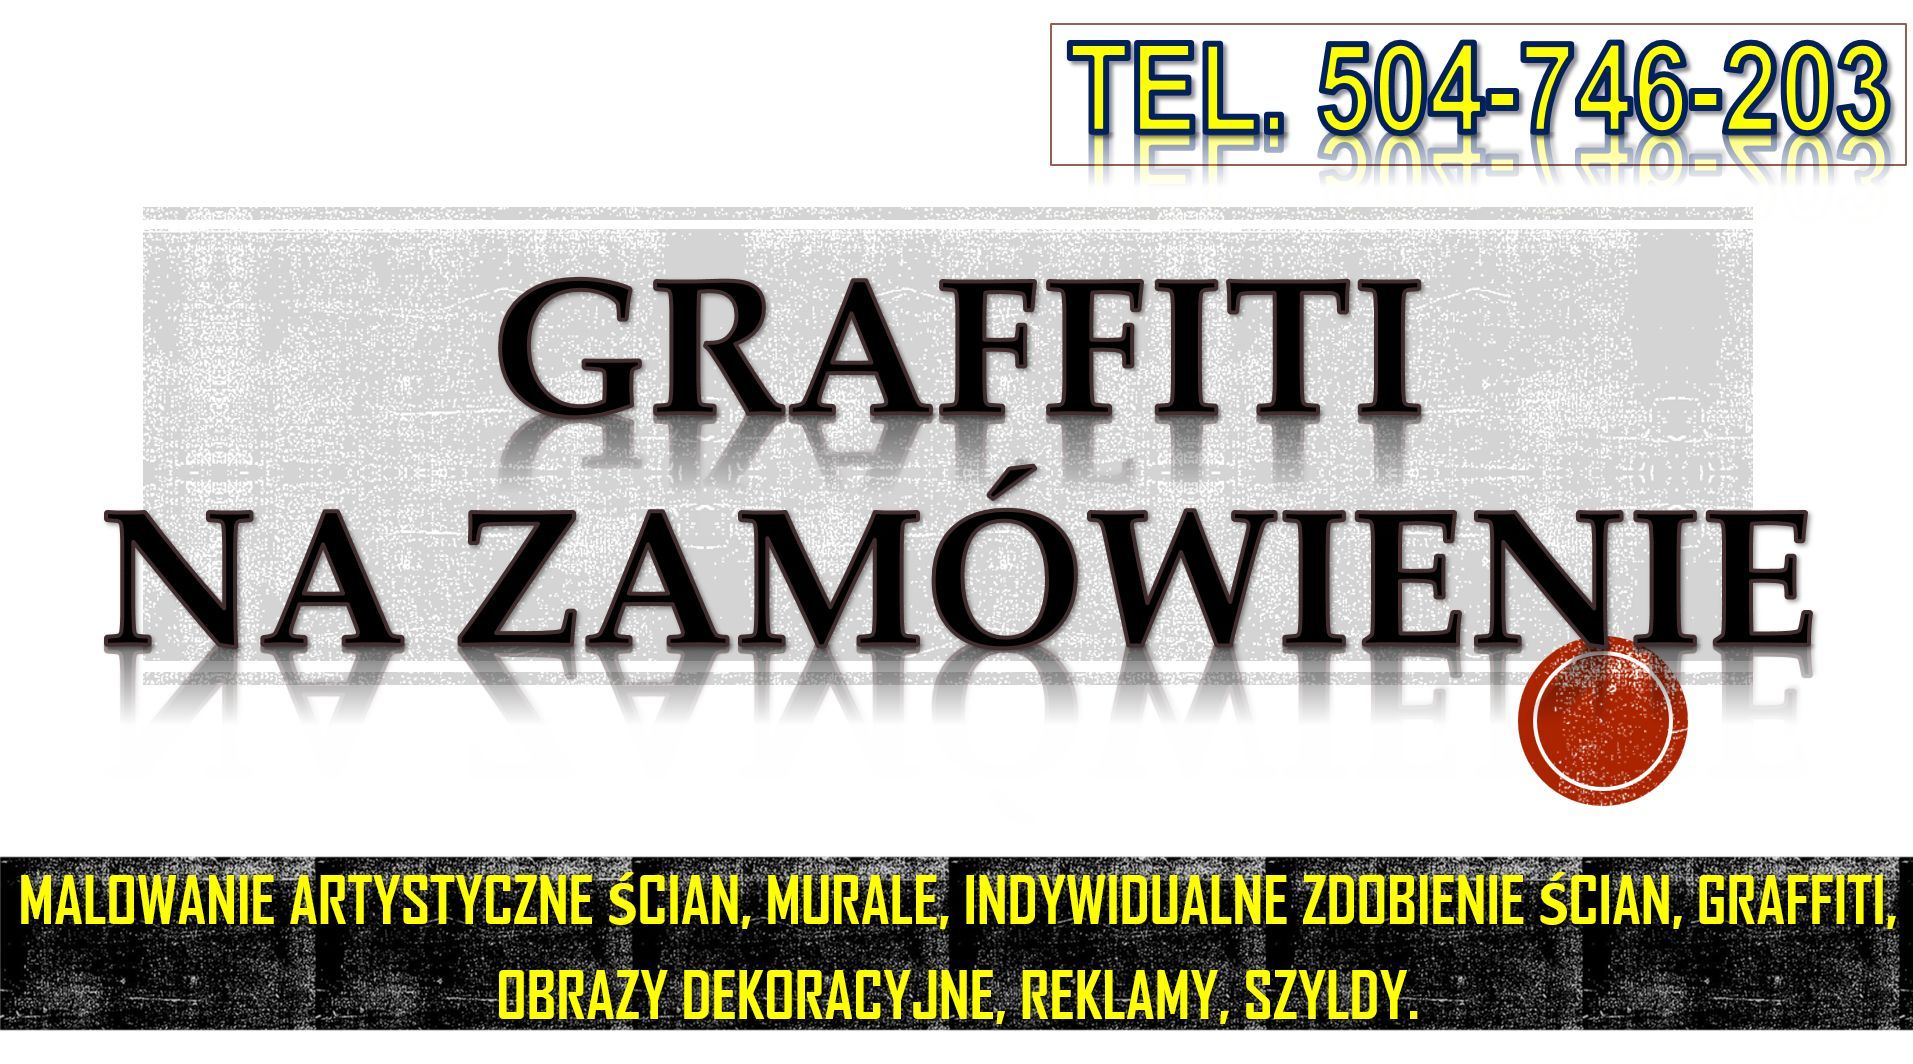 Malowanie reklam, cena, tel;. 504-746-203, szyldów, na ścianie, murali, graffiti Wrocław - Zdjęcie 1